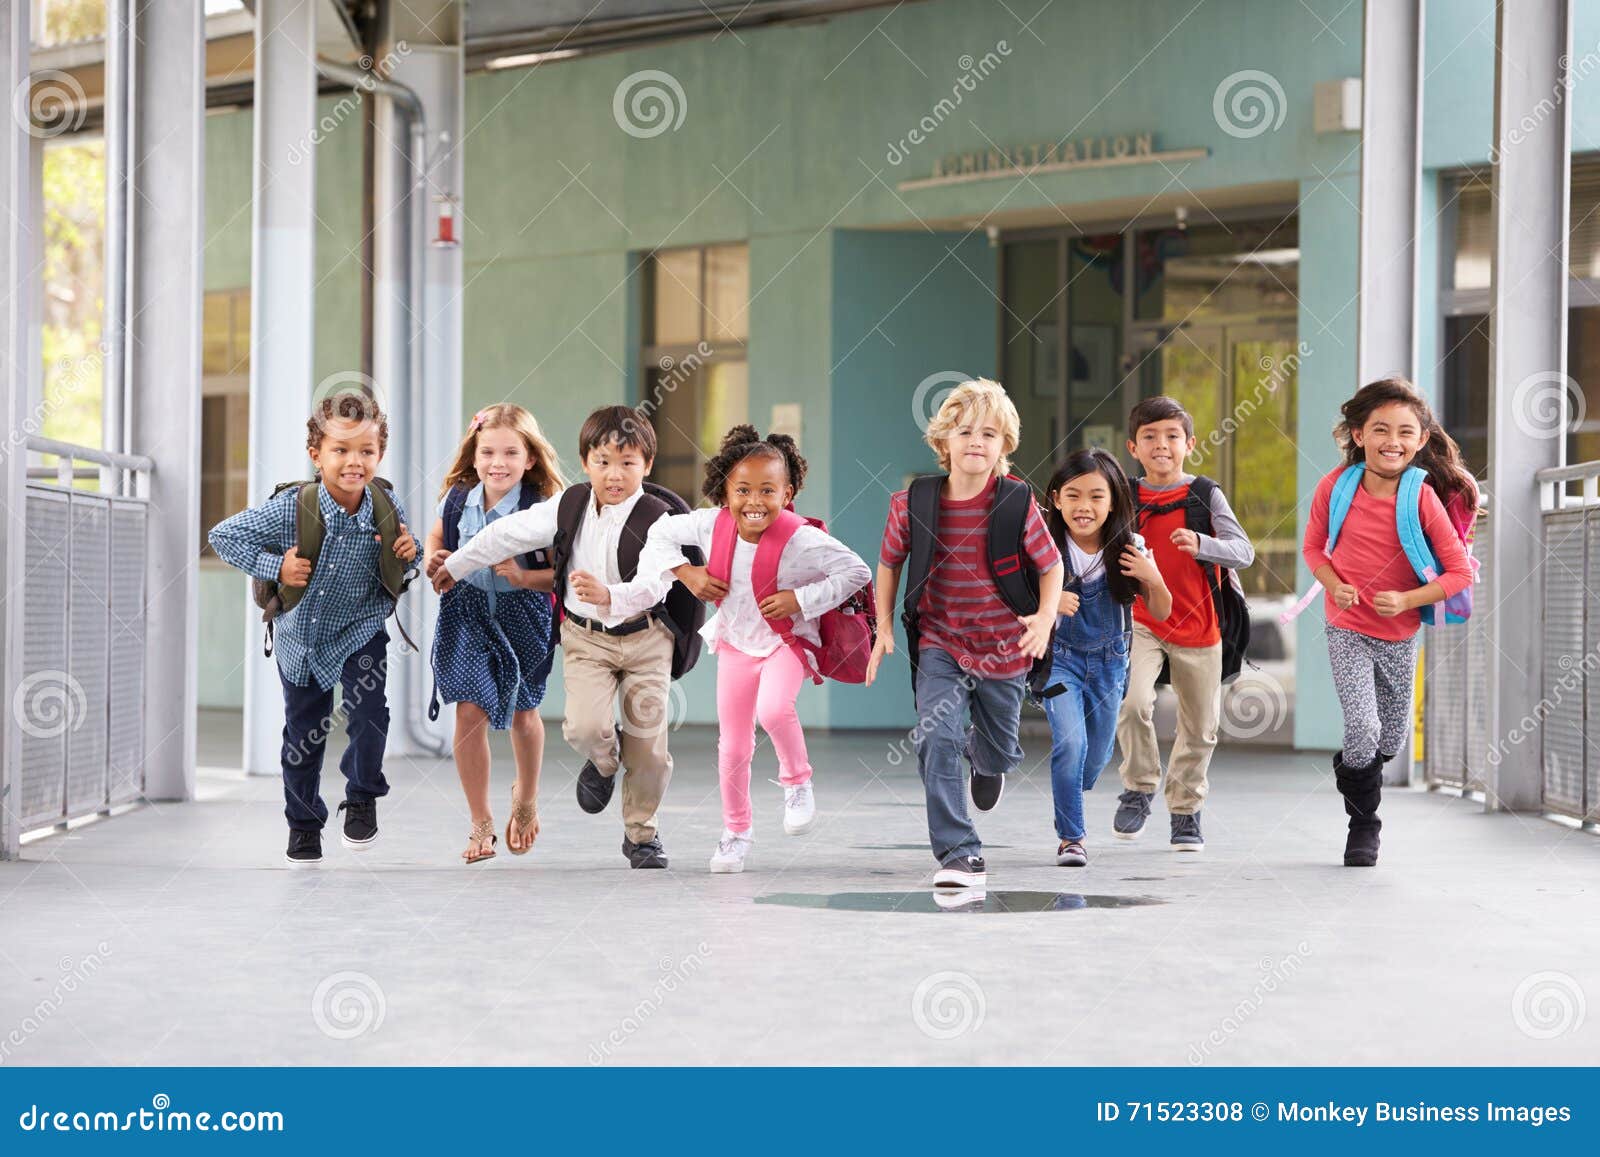 group of ary school kids running in a school corridor